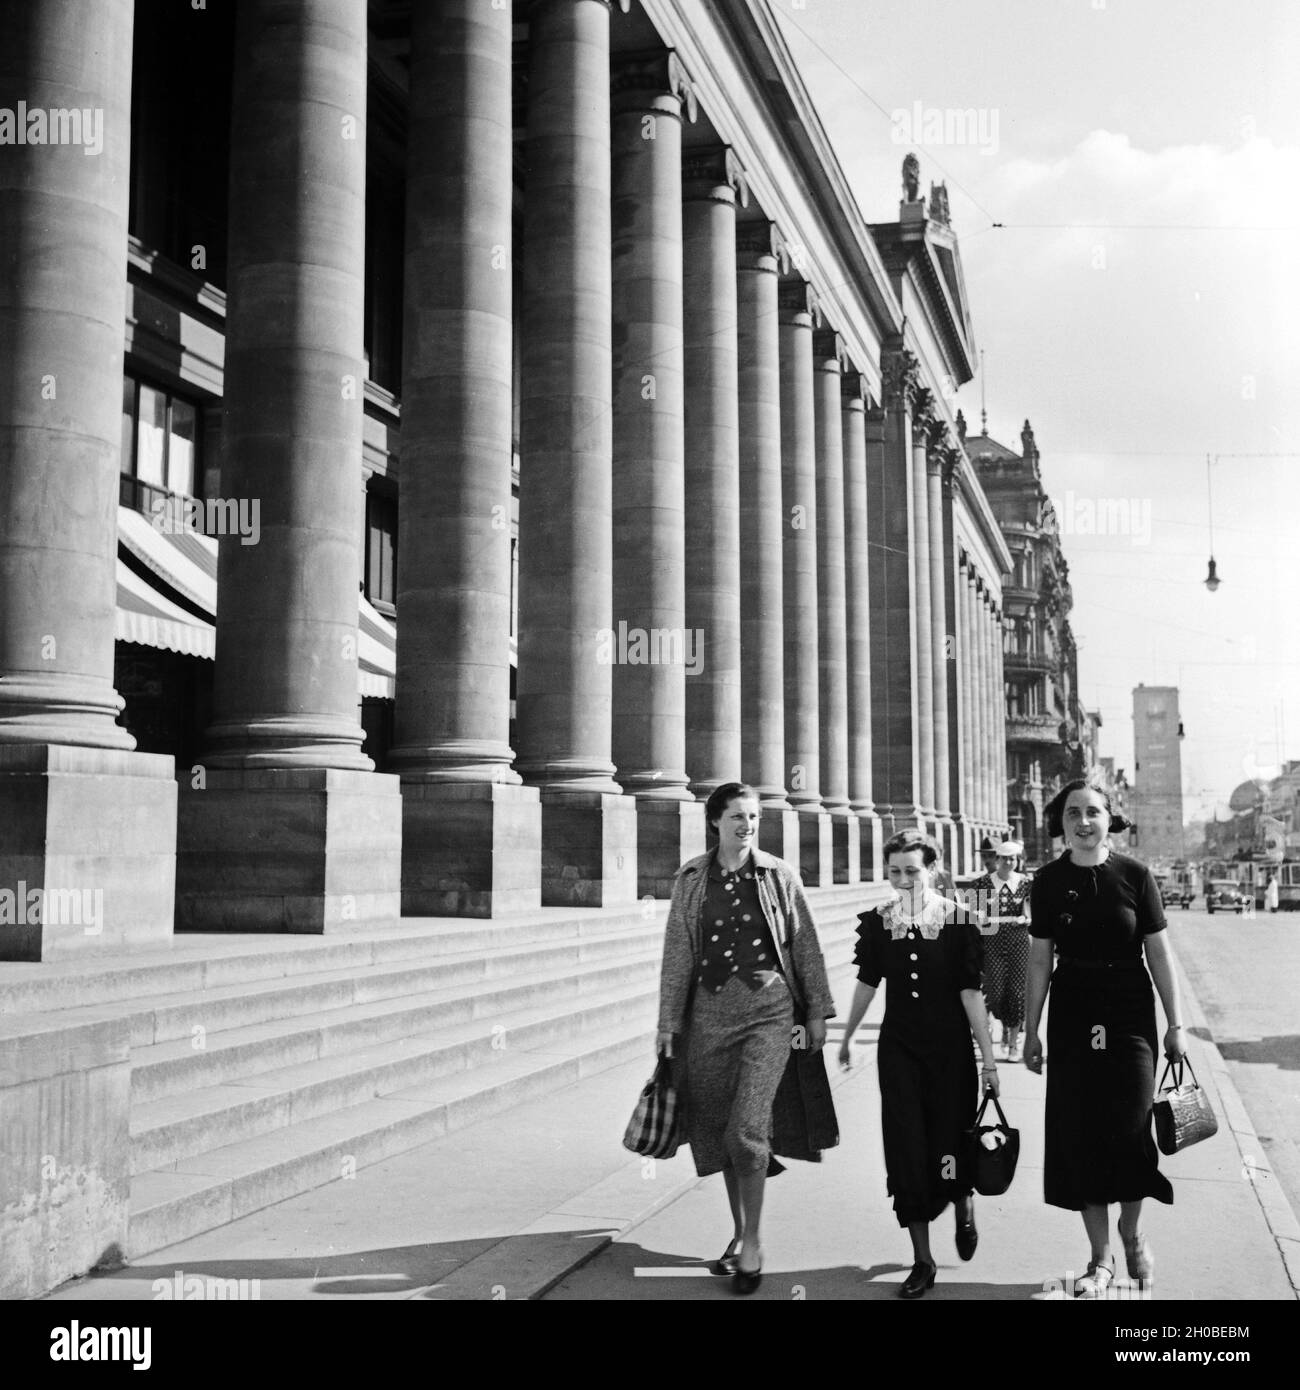 Drei Frauen kommen vom Einkauf am Königsbau a Stoccarda vorbei, Deutschland 1930er Jahre. Tre donne provenienti dai negozi lungo il palazzo Koenigsbau a Stoccarda, Germania 1930s. Foto Stock